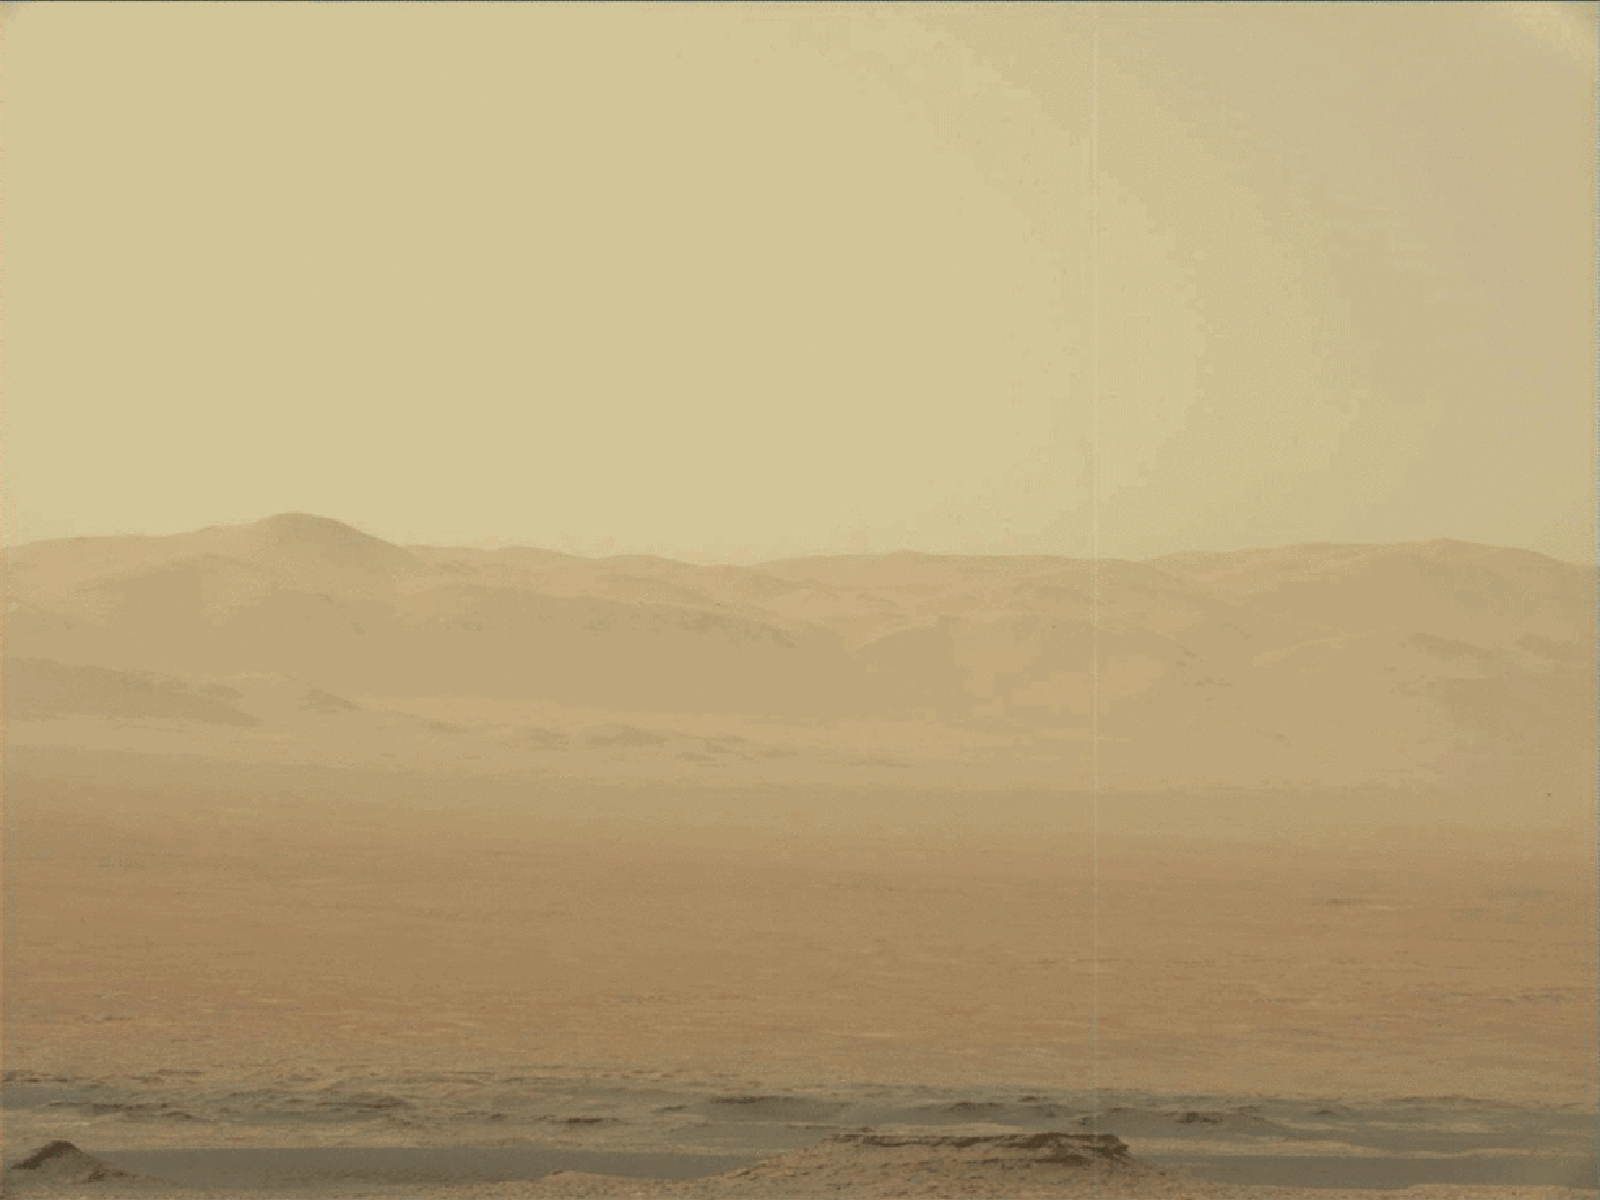 Exploring Mars' Red Hue: Geological & Atmospheric Factors